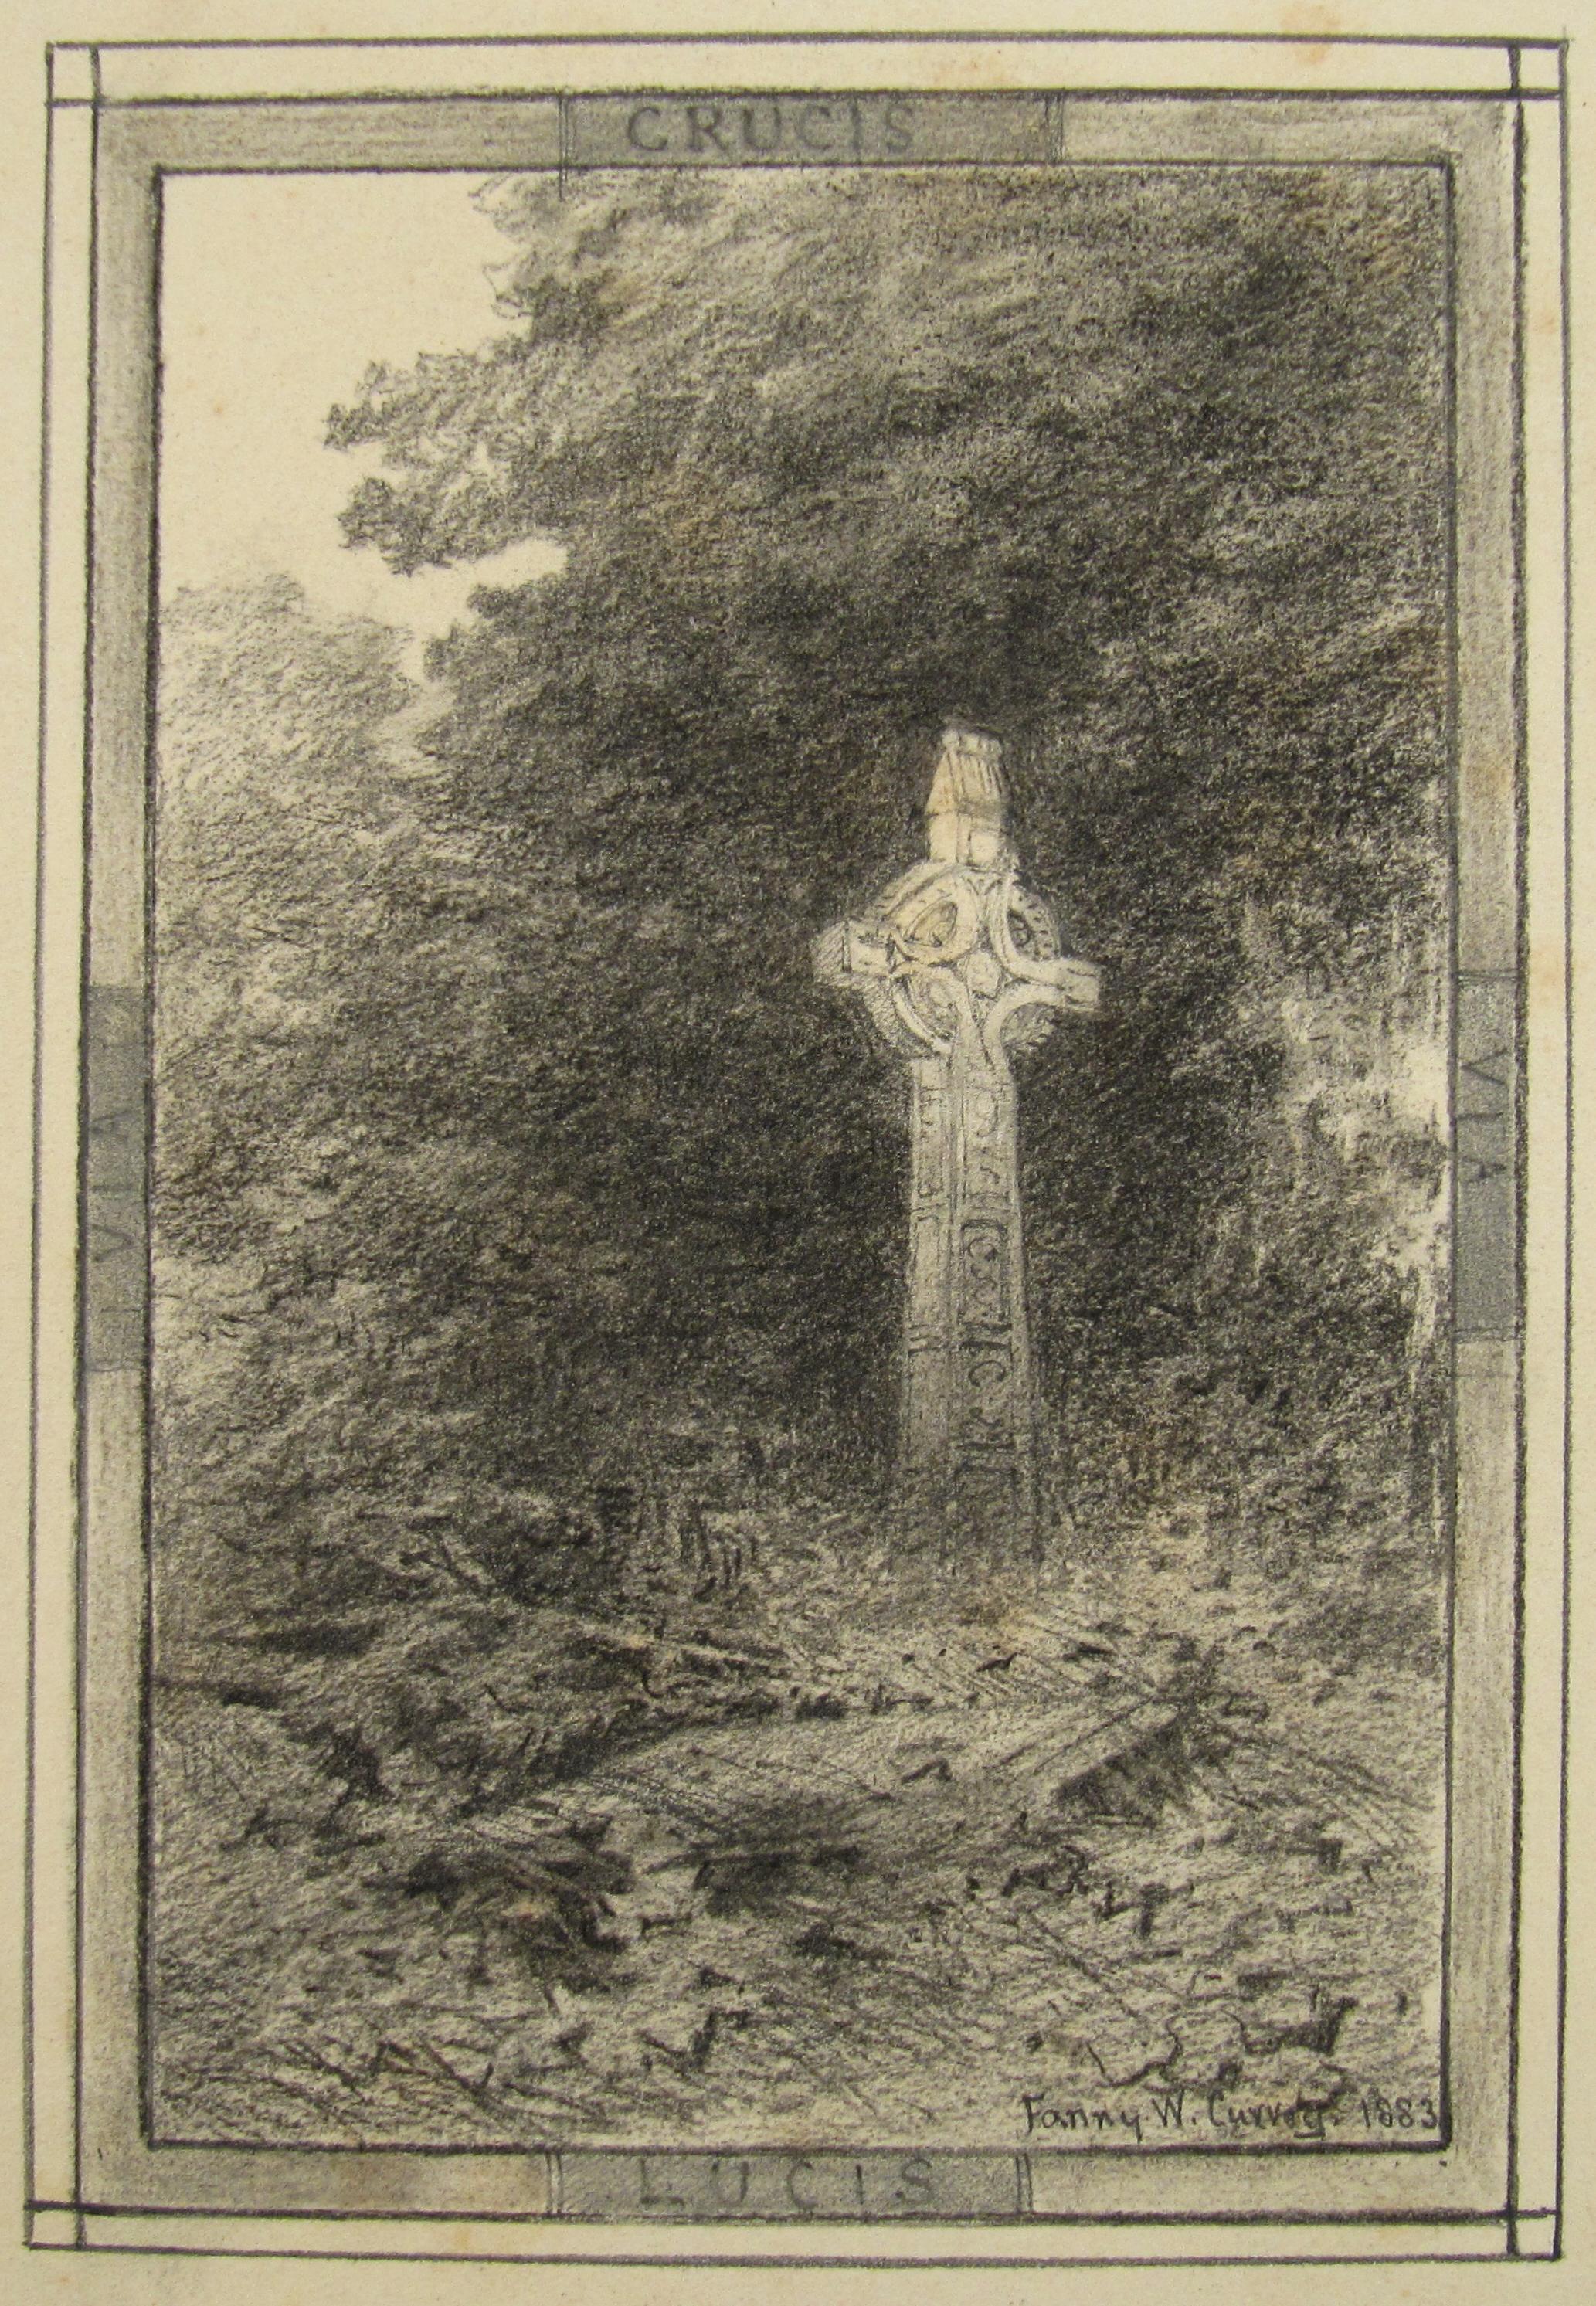 Landscape Art Fanny Wimot Currey - Fanny W. Currey (Irlande) dessin du 19e siècle représentant une croix celtique - Via Crucis Via Lucis